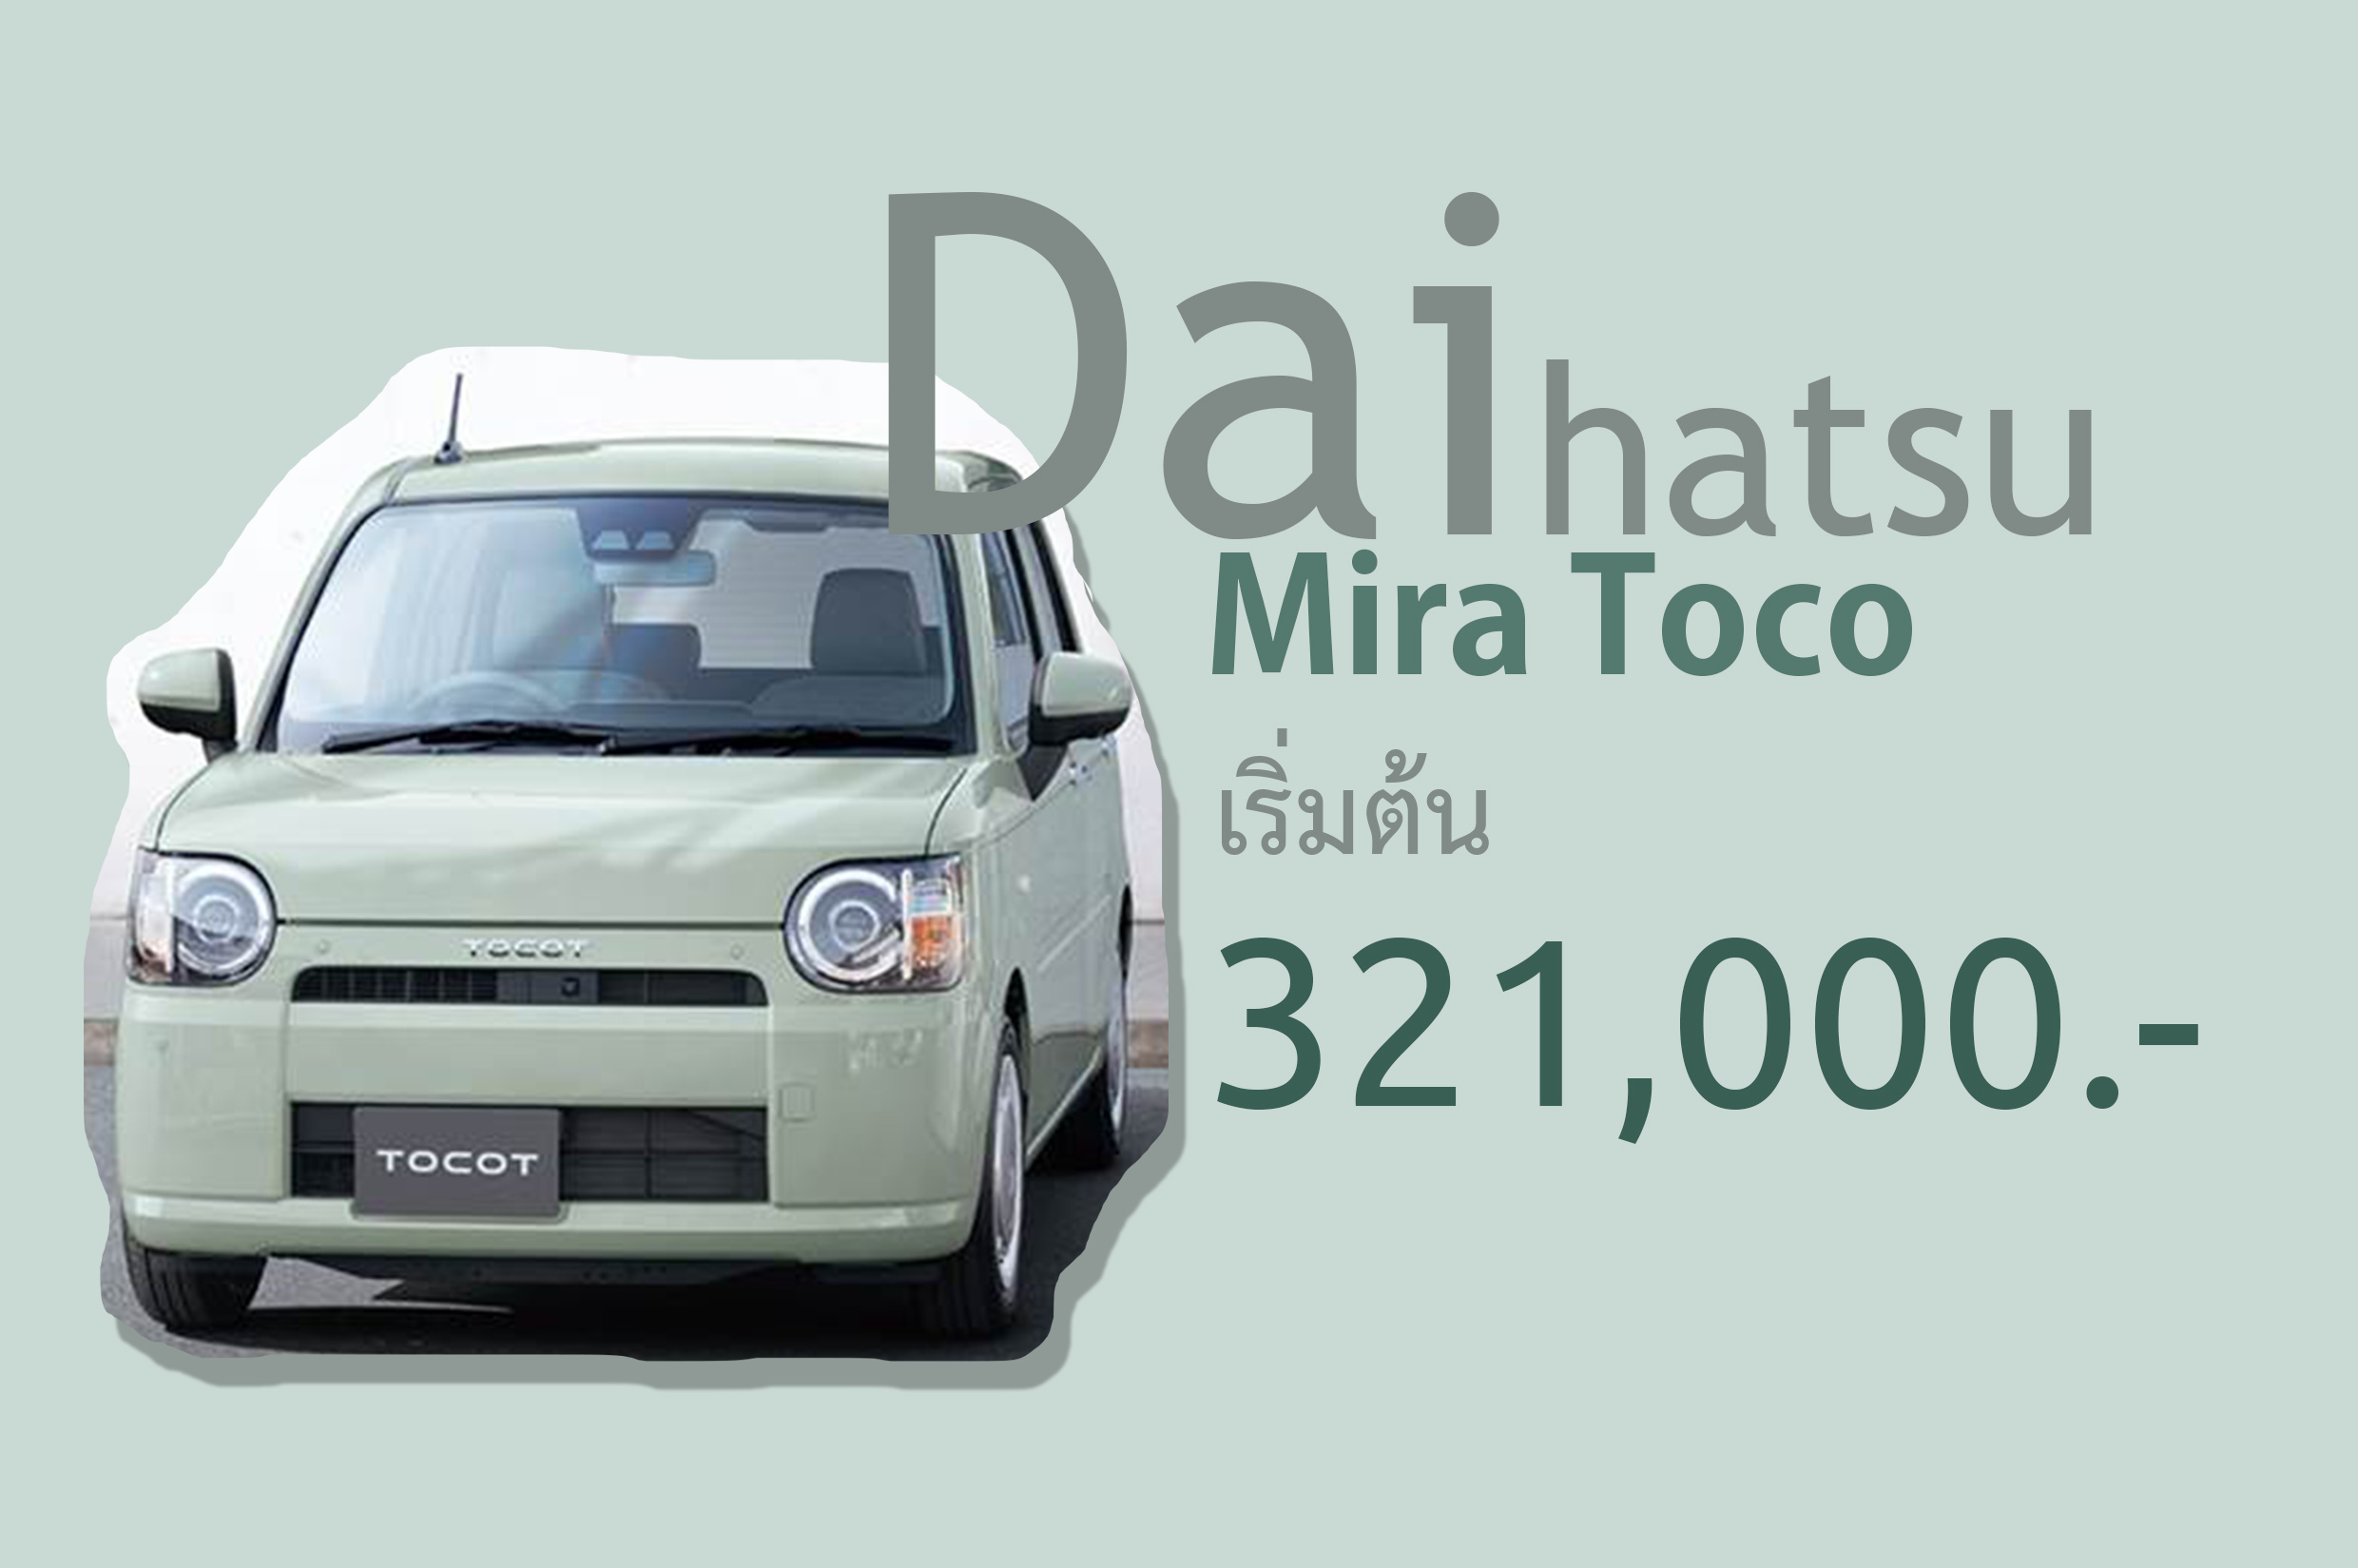 Daihatsu Mira Tocot รถเก๋ๆ ราคาเริ่มต้น 321,000 บาทในญิปุ่น